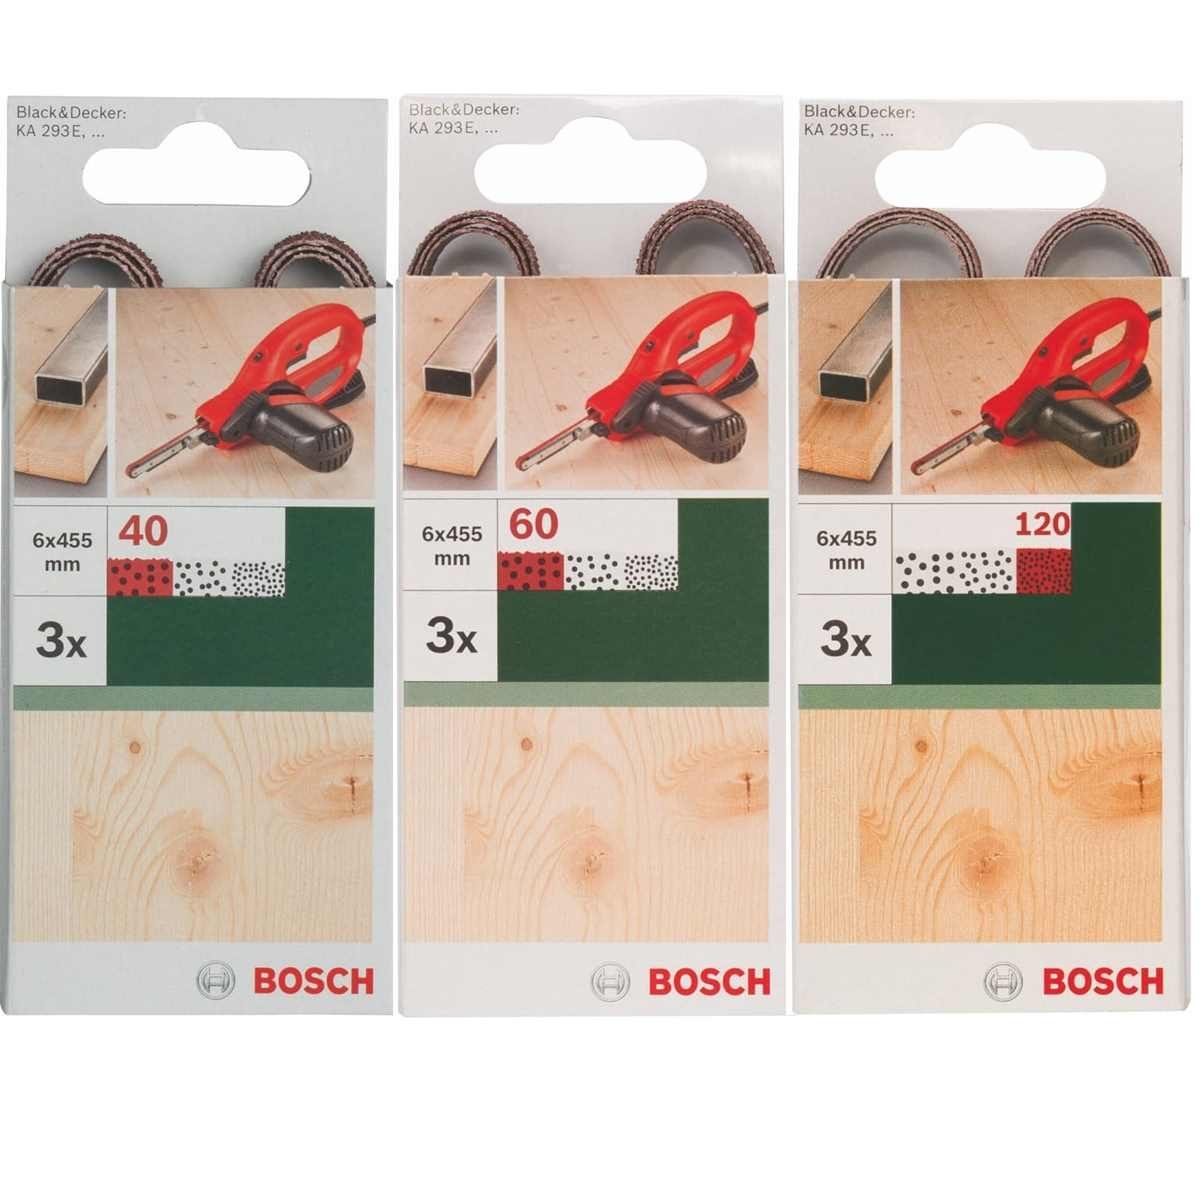 BOSCH Bohrfutter Bosch 451 40,60 x Powerfile KA mm, x B+D für 3 Schleifbänder 6 3 293E